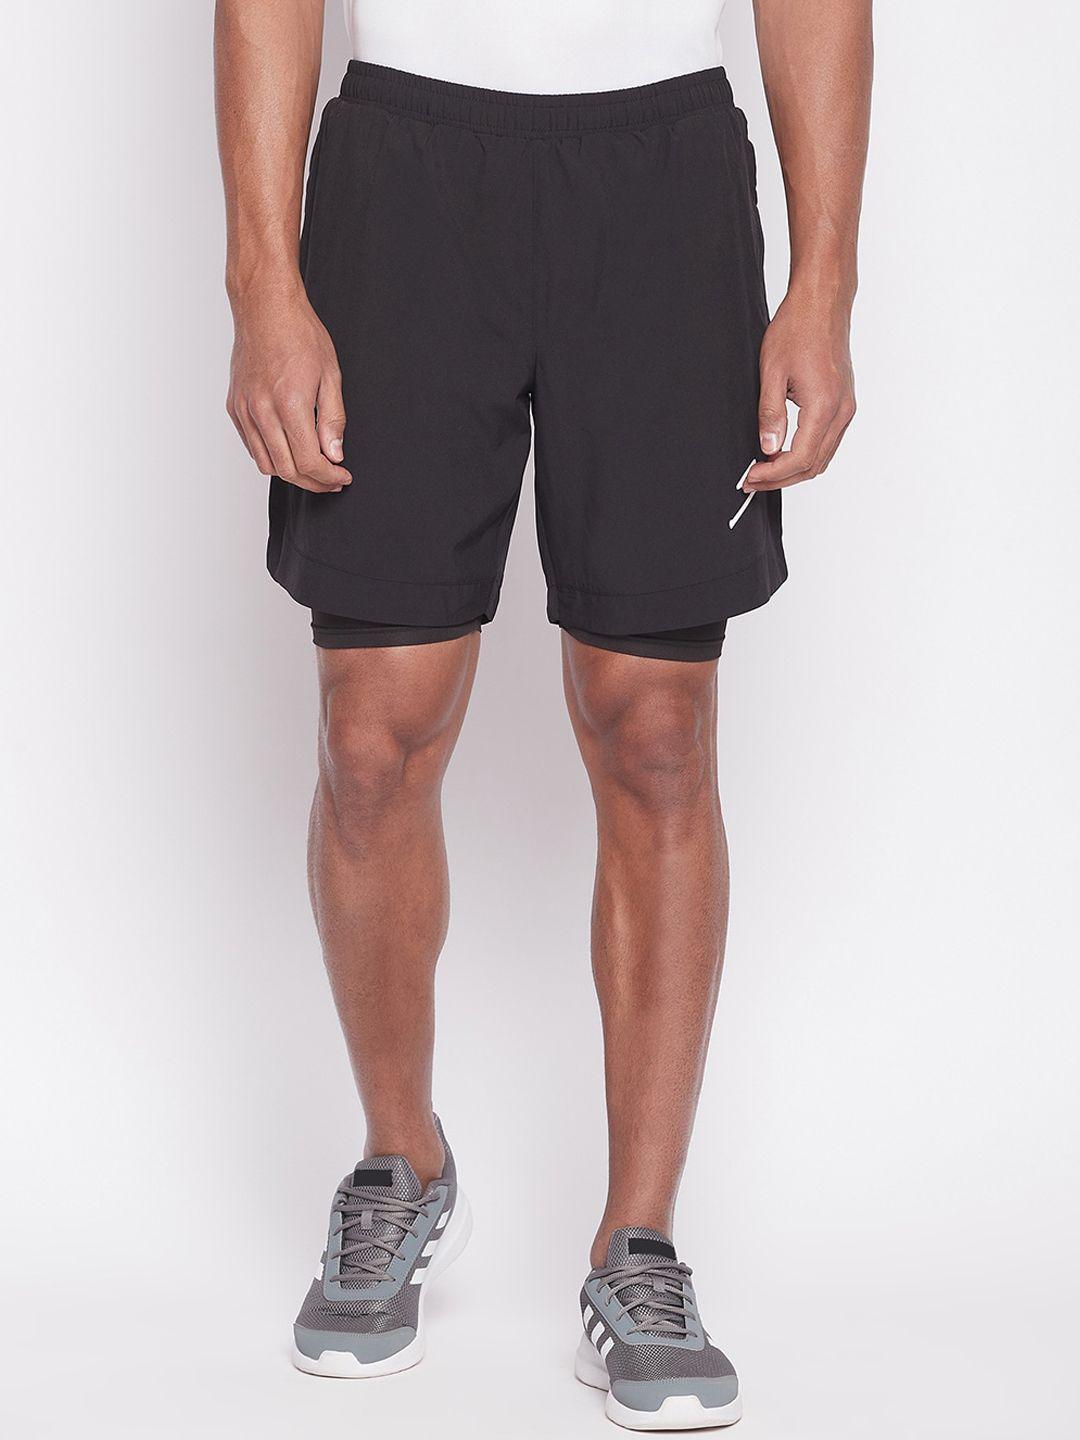 unpar-men-sports-shorts